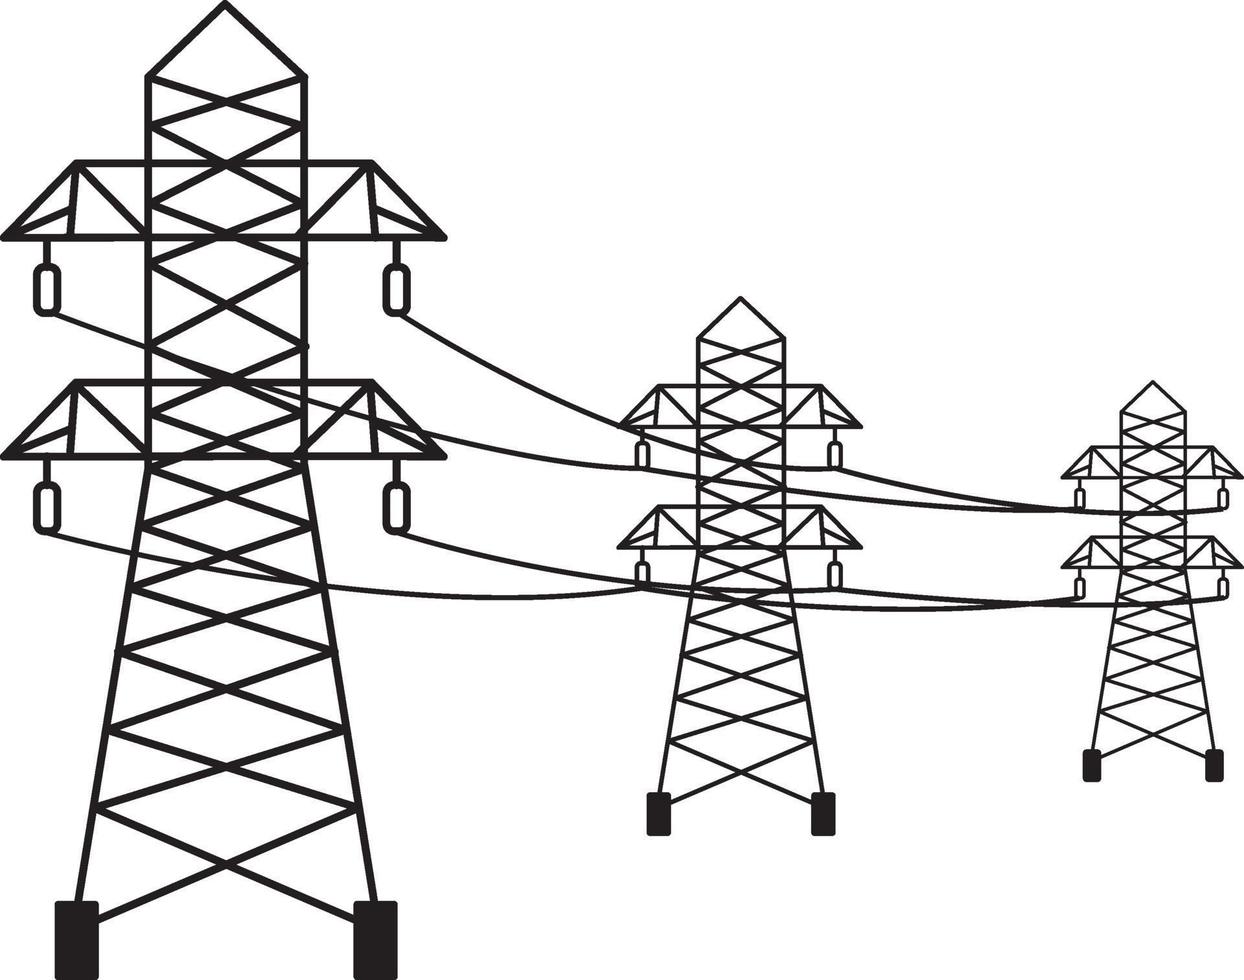 postes de eletricidade, ilustração, vetor em um fundo branco.